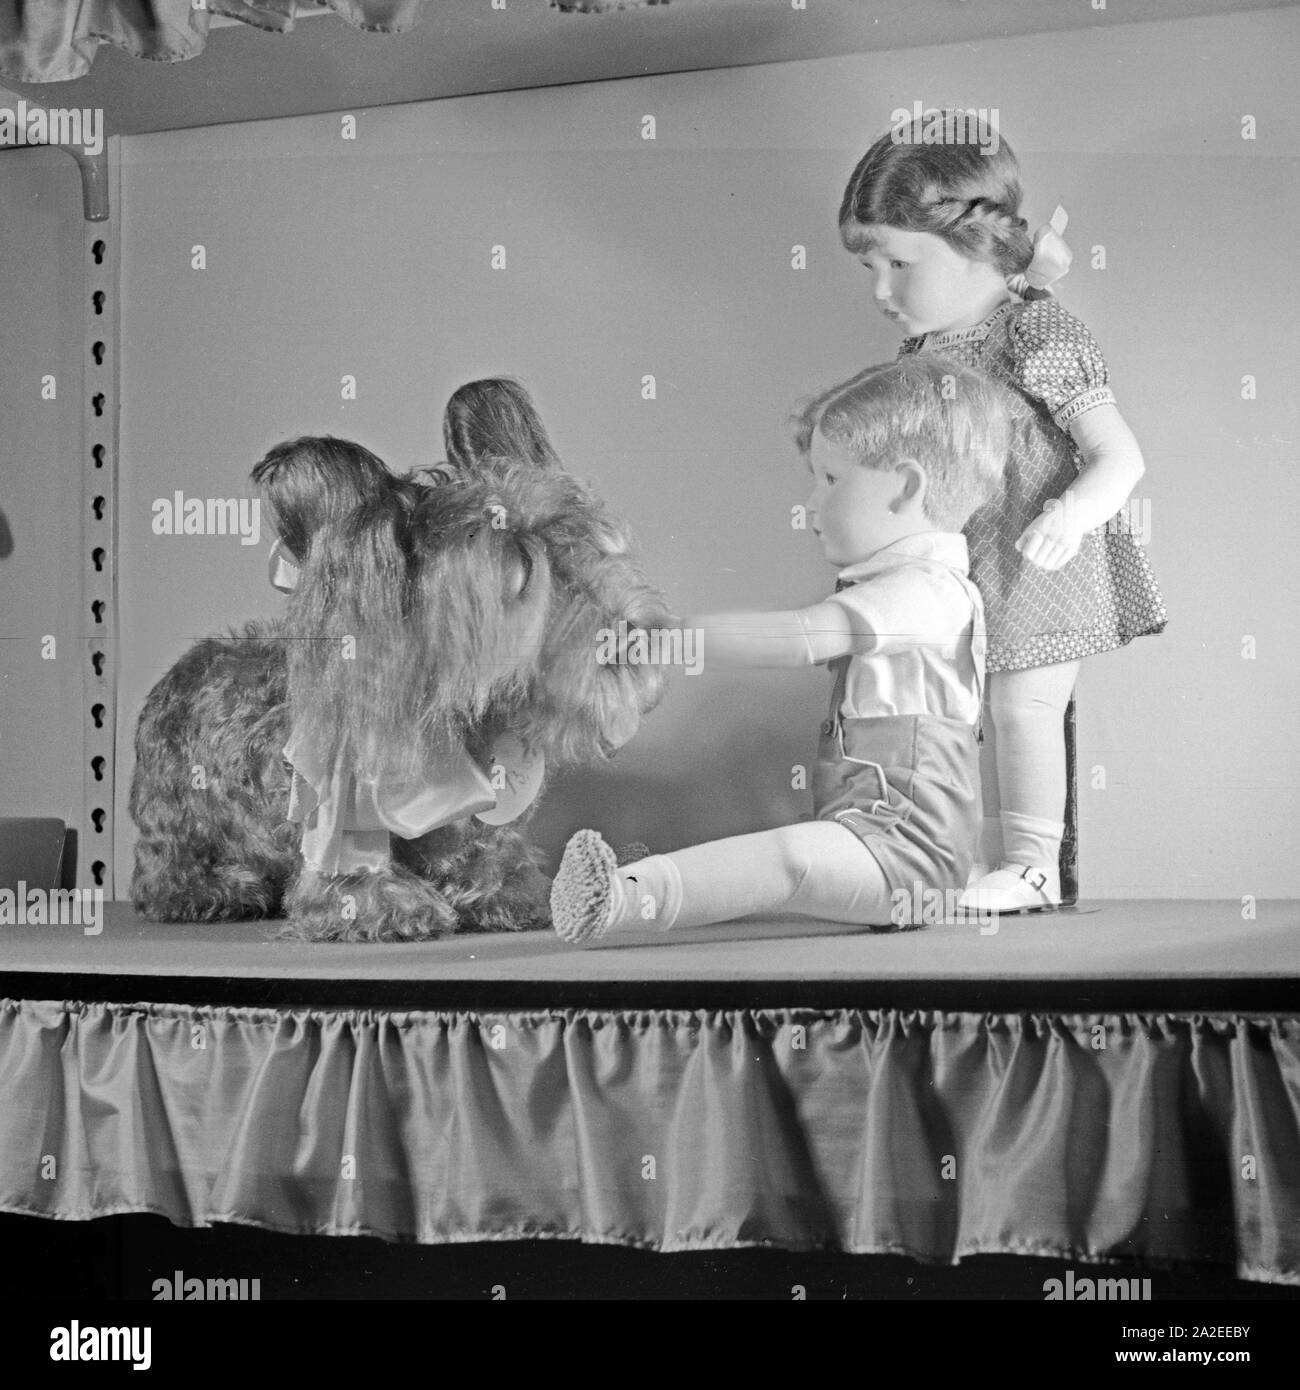 Einige Modelle, hier der Junge und Mädchen mit Riesenhund, der berühmten Kate Kruse Puppen aus Bad Kösen, Deutschland 1930er Jahre. Alcuni campioni del famoso Kaethe Kruse bambole di Bad Koesen, Germania 1930s. Foto Stock